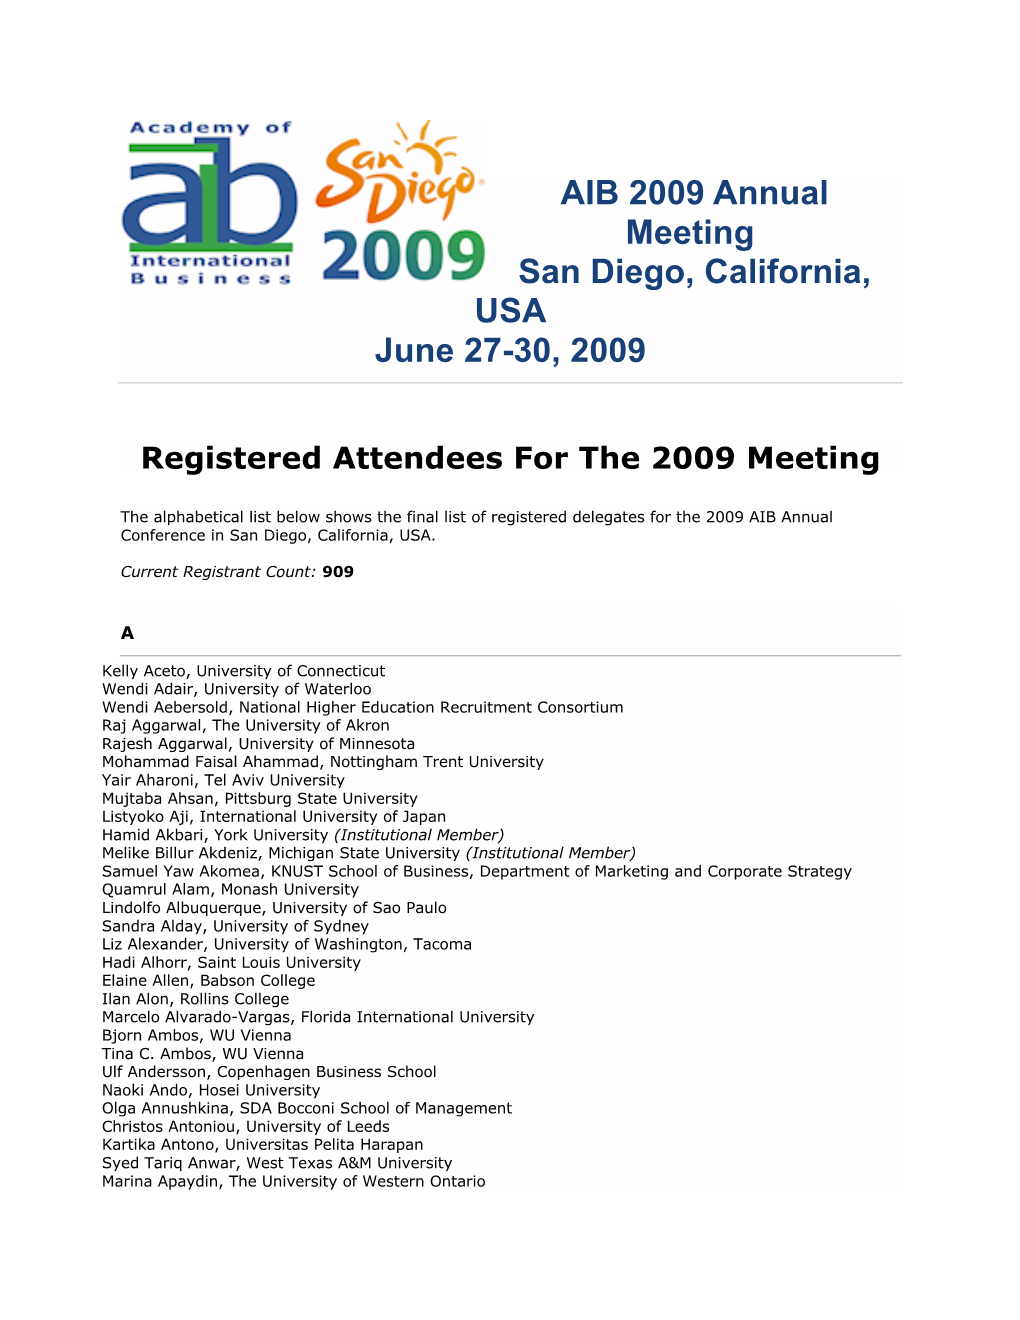 AIB 2009 Annual Meeting San Diego, California, USA June 27-30, 2009